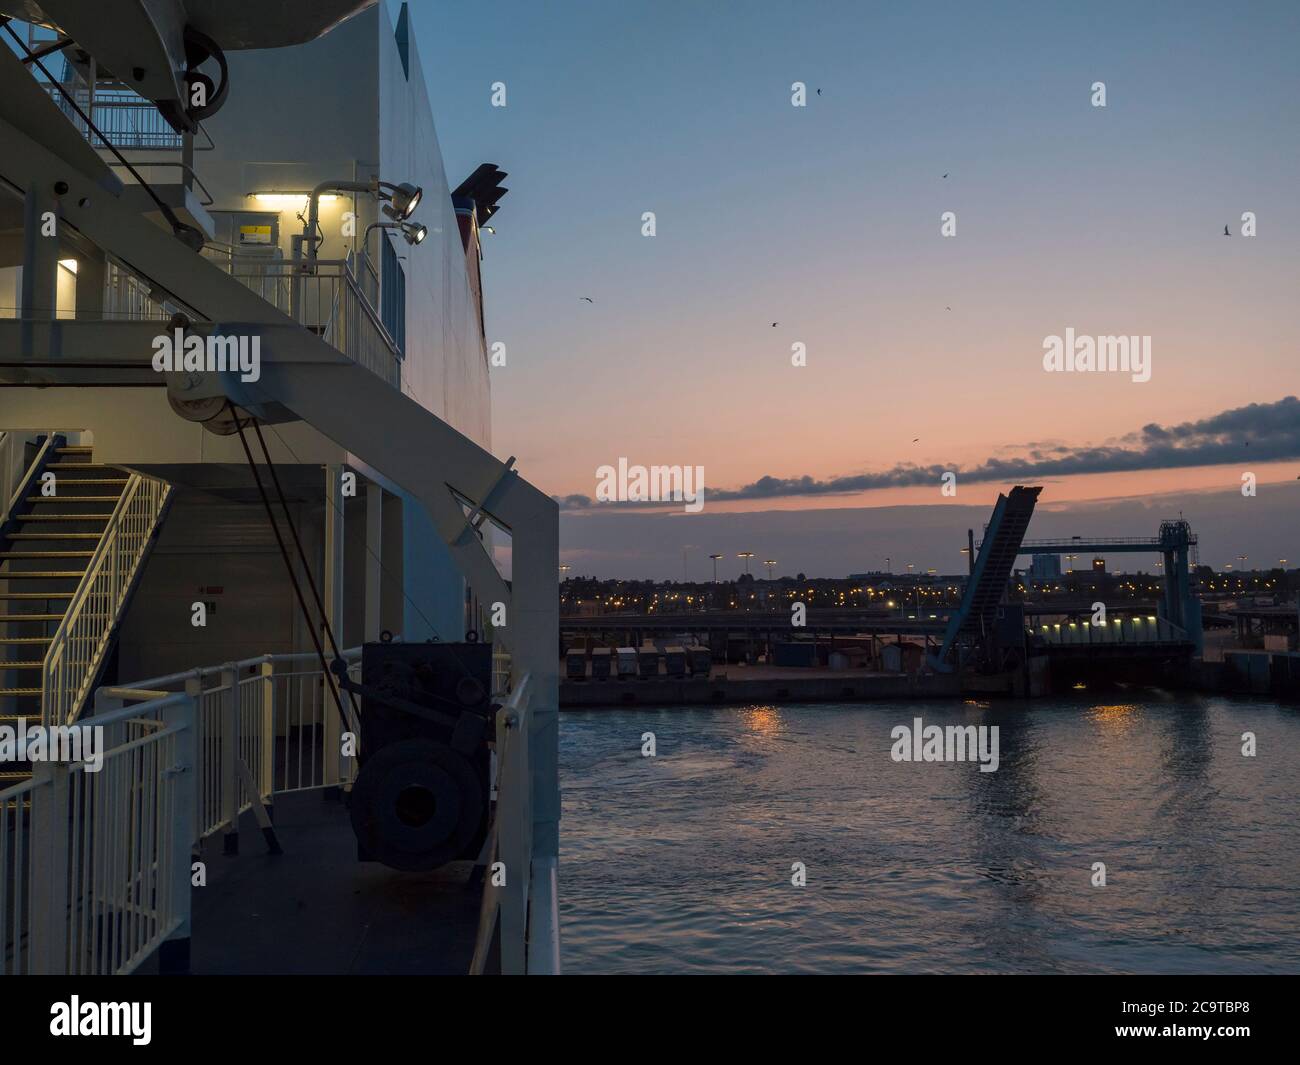 TRELLEBORG, SUÈDE - 21 août 2019 : le ferry de la ligne Stena arrive au port suédois du port de Trelleborg, heure bleue vue depuis le pont Banque D'Images